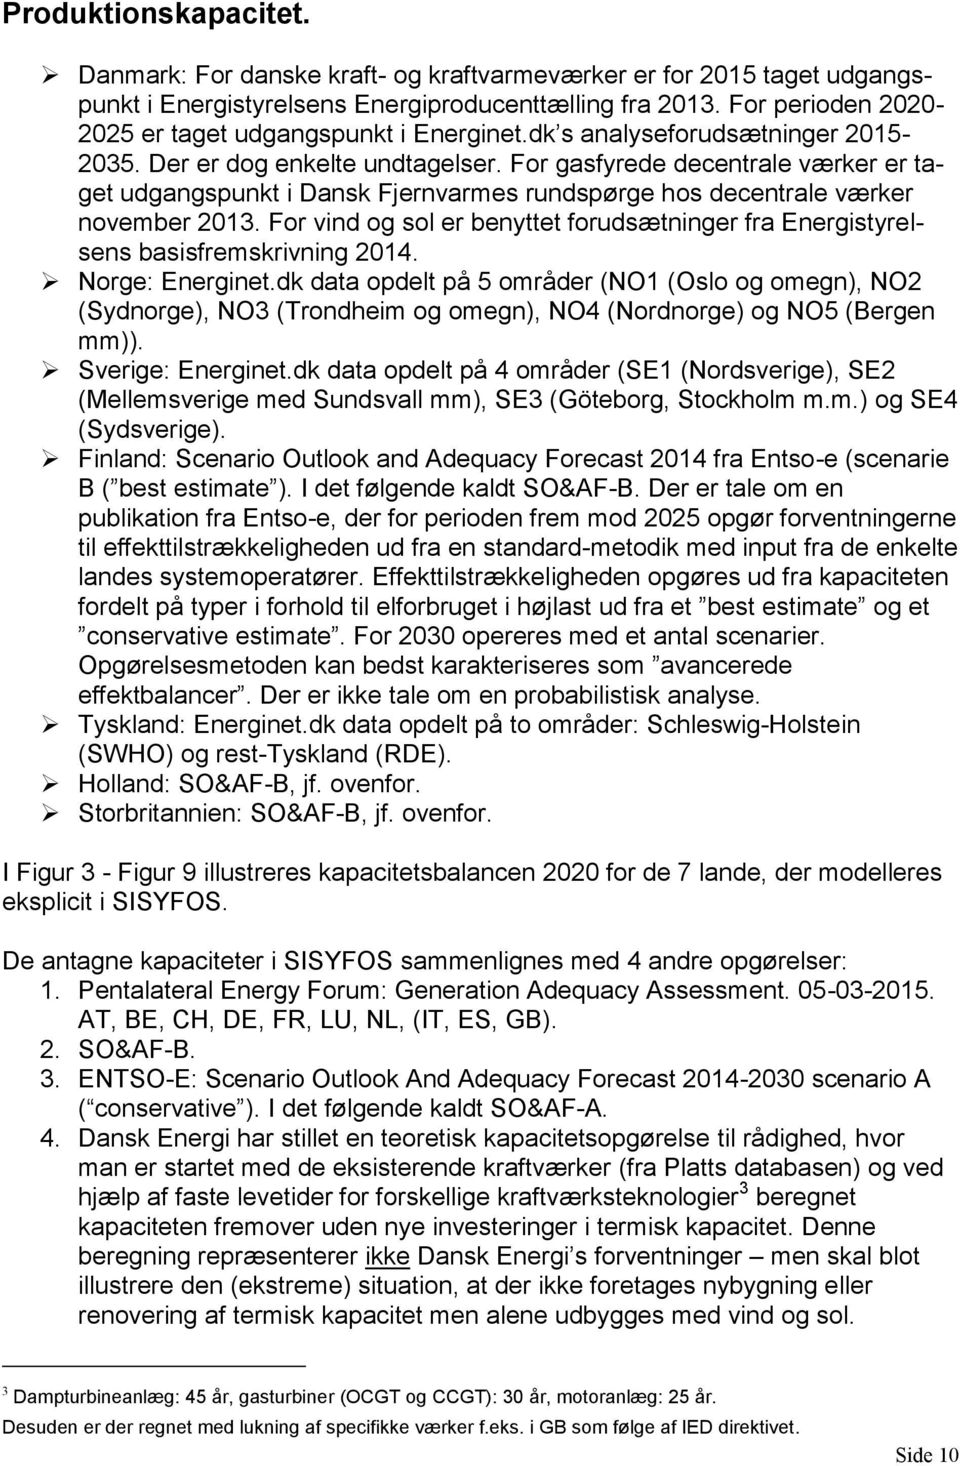 For gasfyrede decentrale værker er taget udgangspunkt i Dansk Fjernvarmes rundspørge hos decentrale værker november 2013.